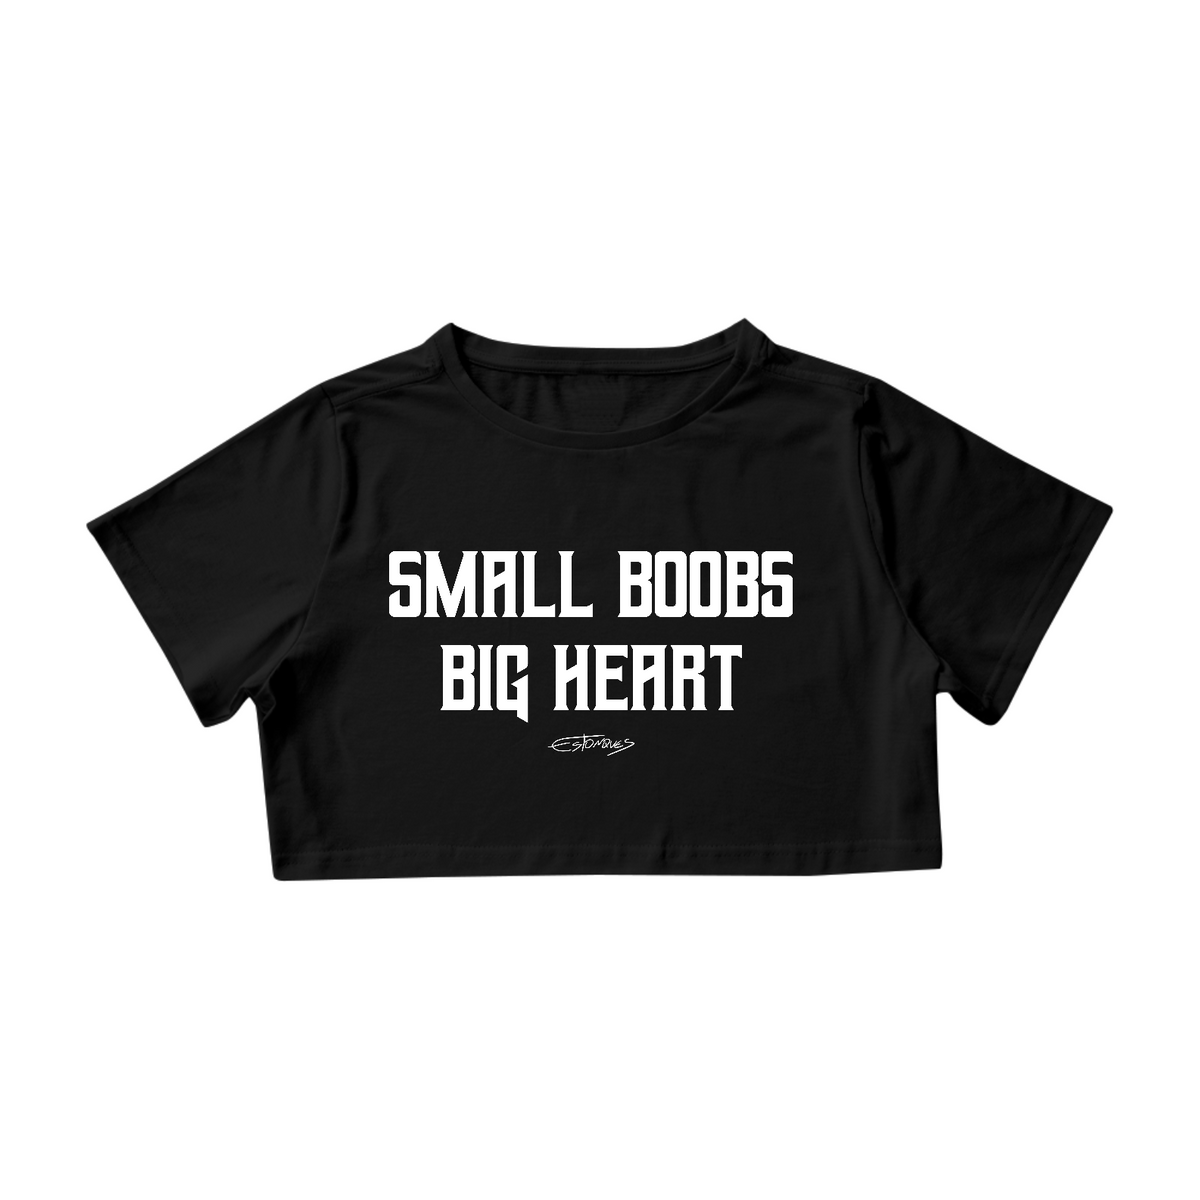 Nome do produto: Cropped Small Boobs Big Heart